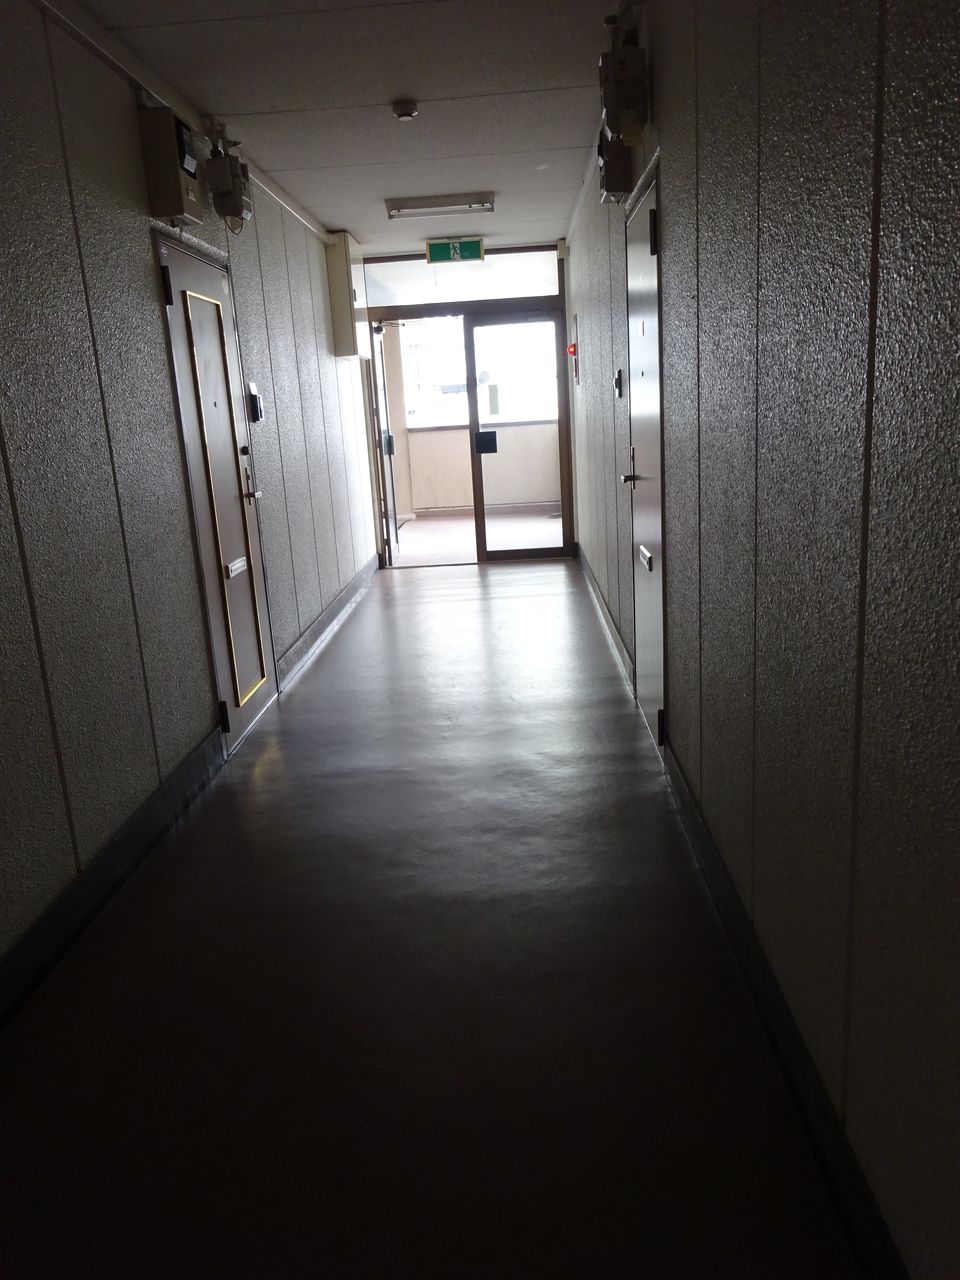 暗いイメージの廊下